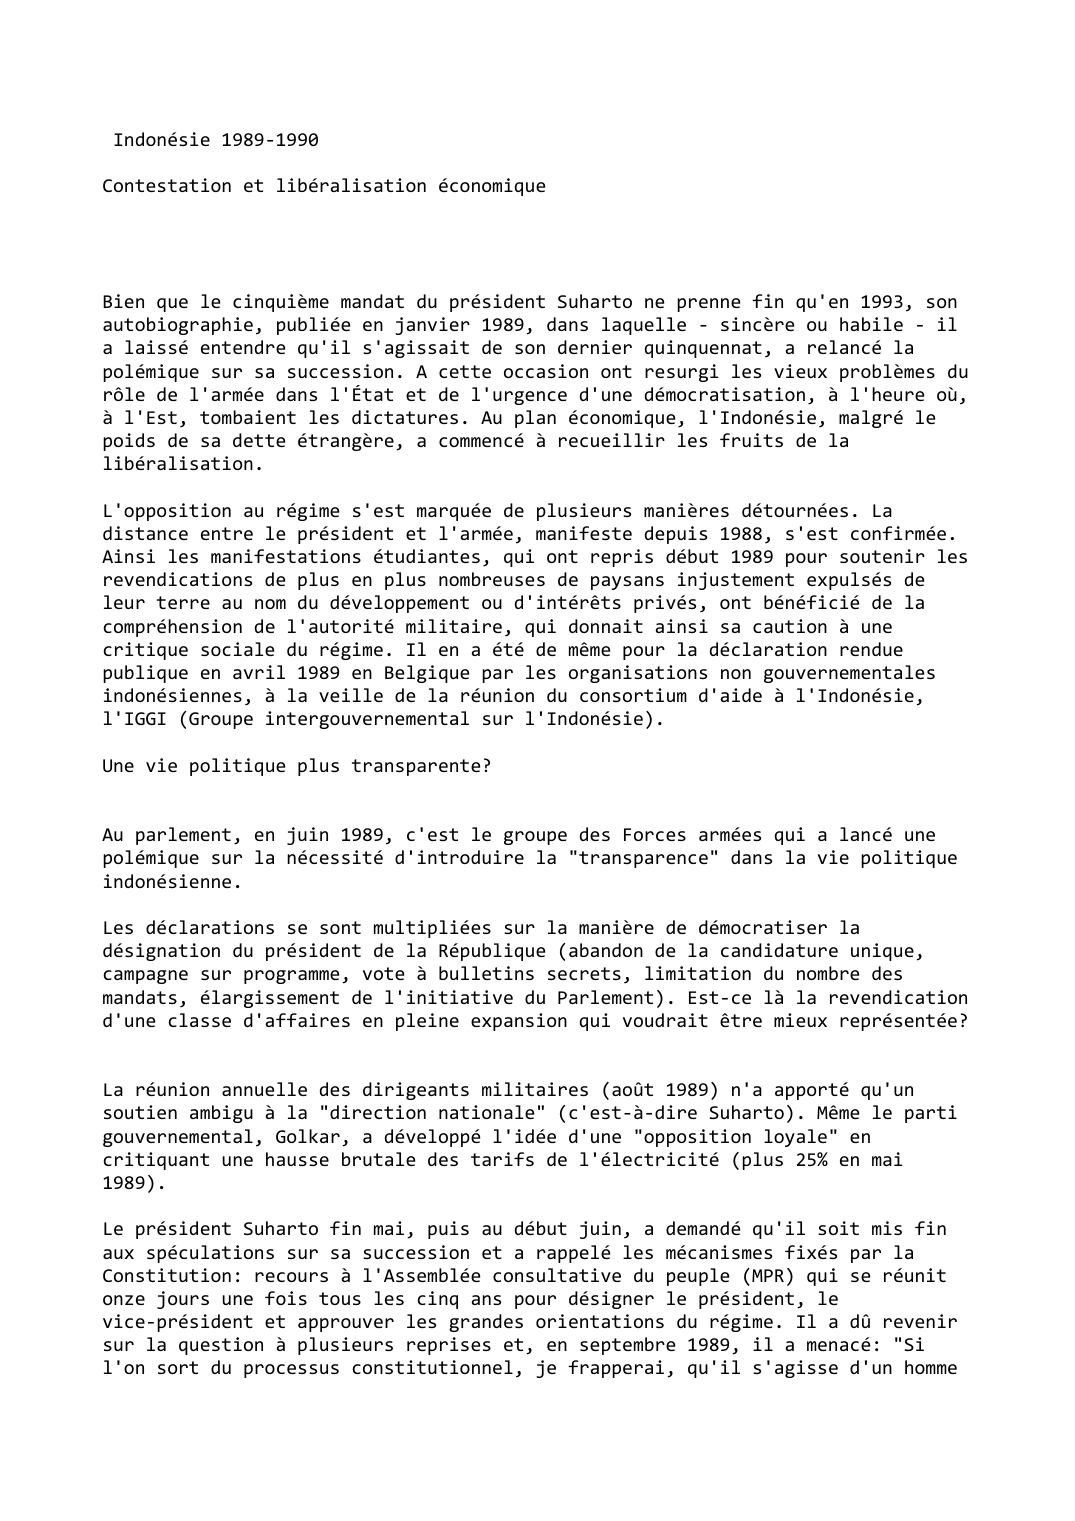 Prévisualisation du document Indonésie (1989-1990)

Contestation et libéralisation économique